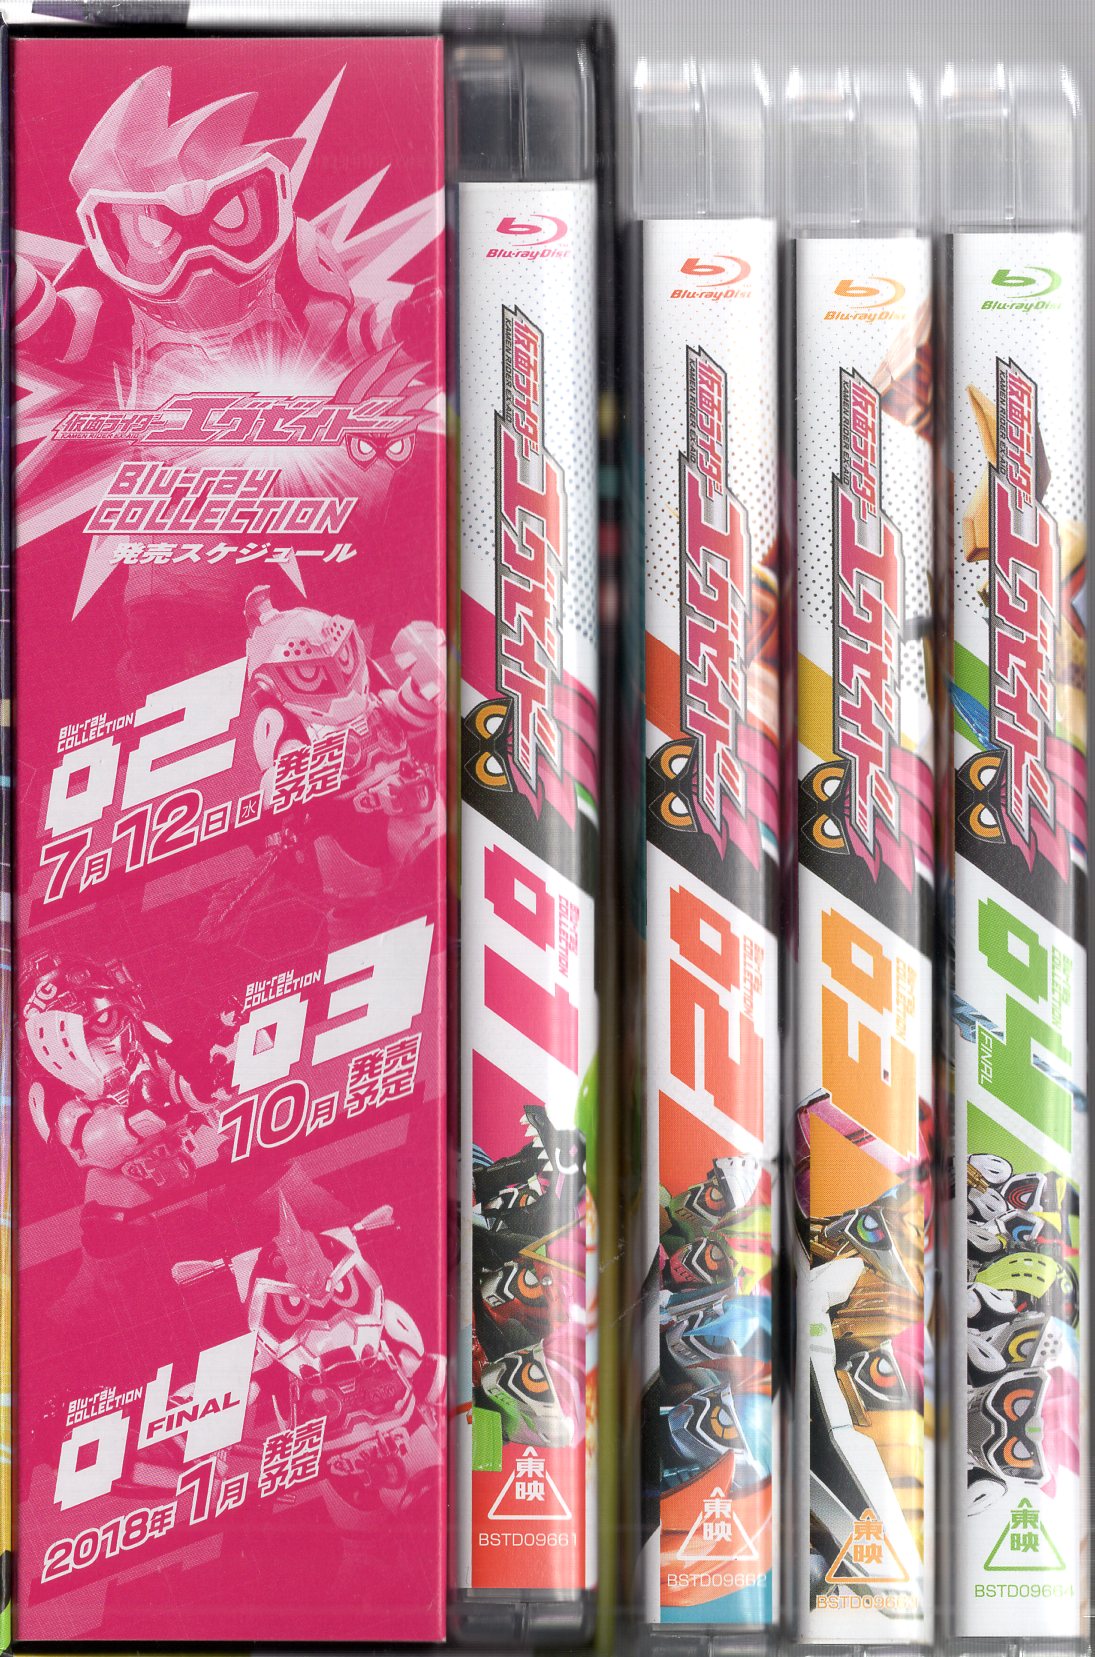 特撮Blu-ray 初回)仮面ライダーエグゼイド Blu-ray COLLECTION 全4巻